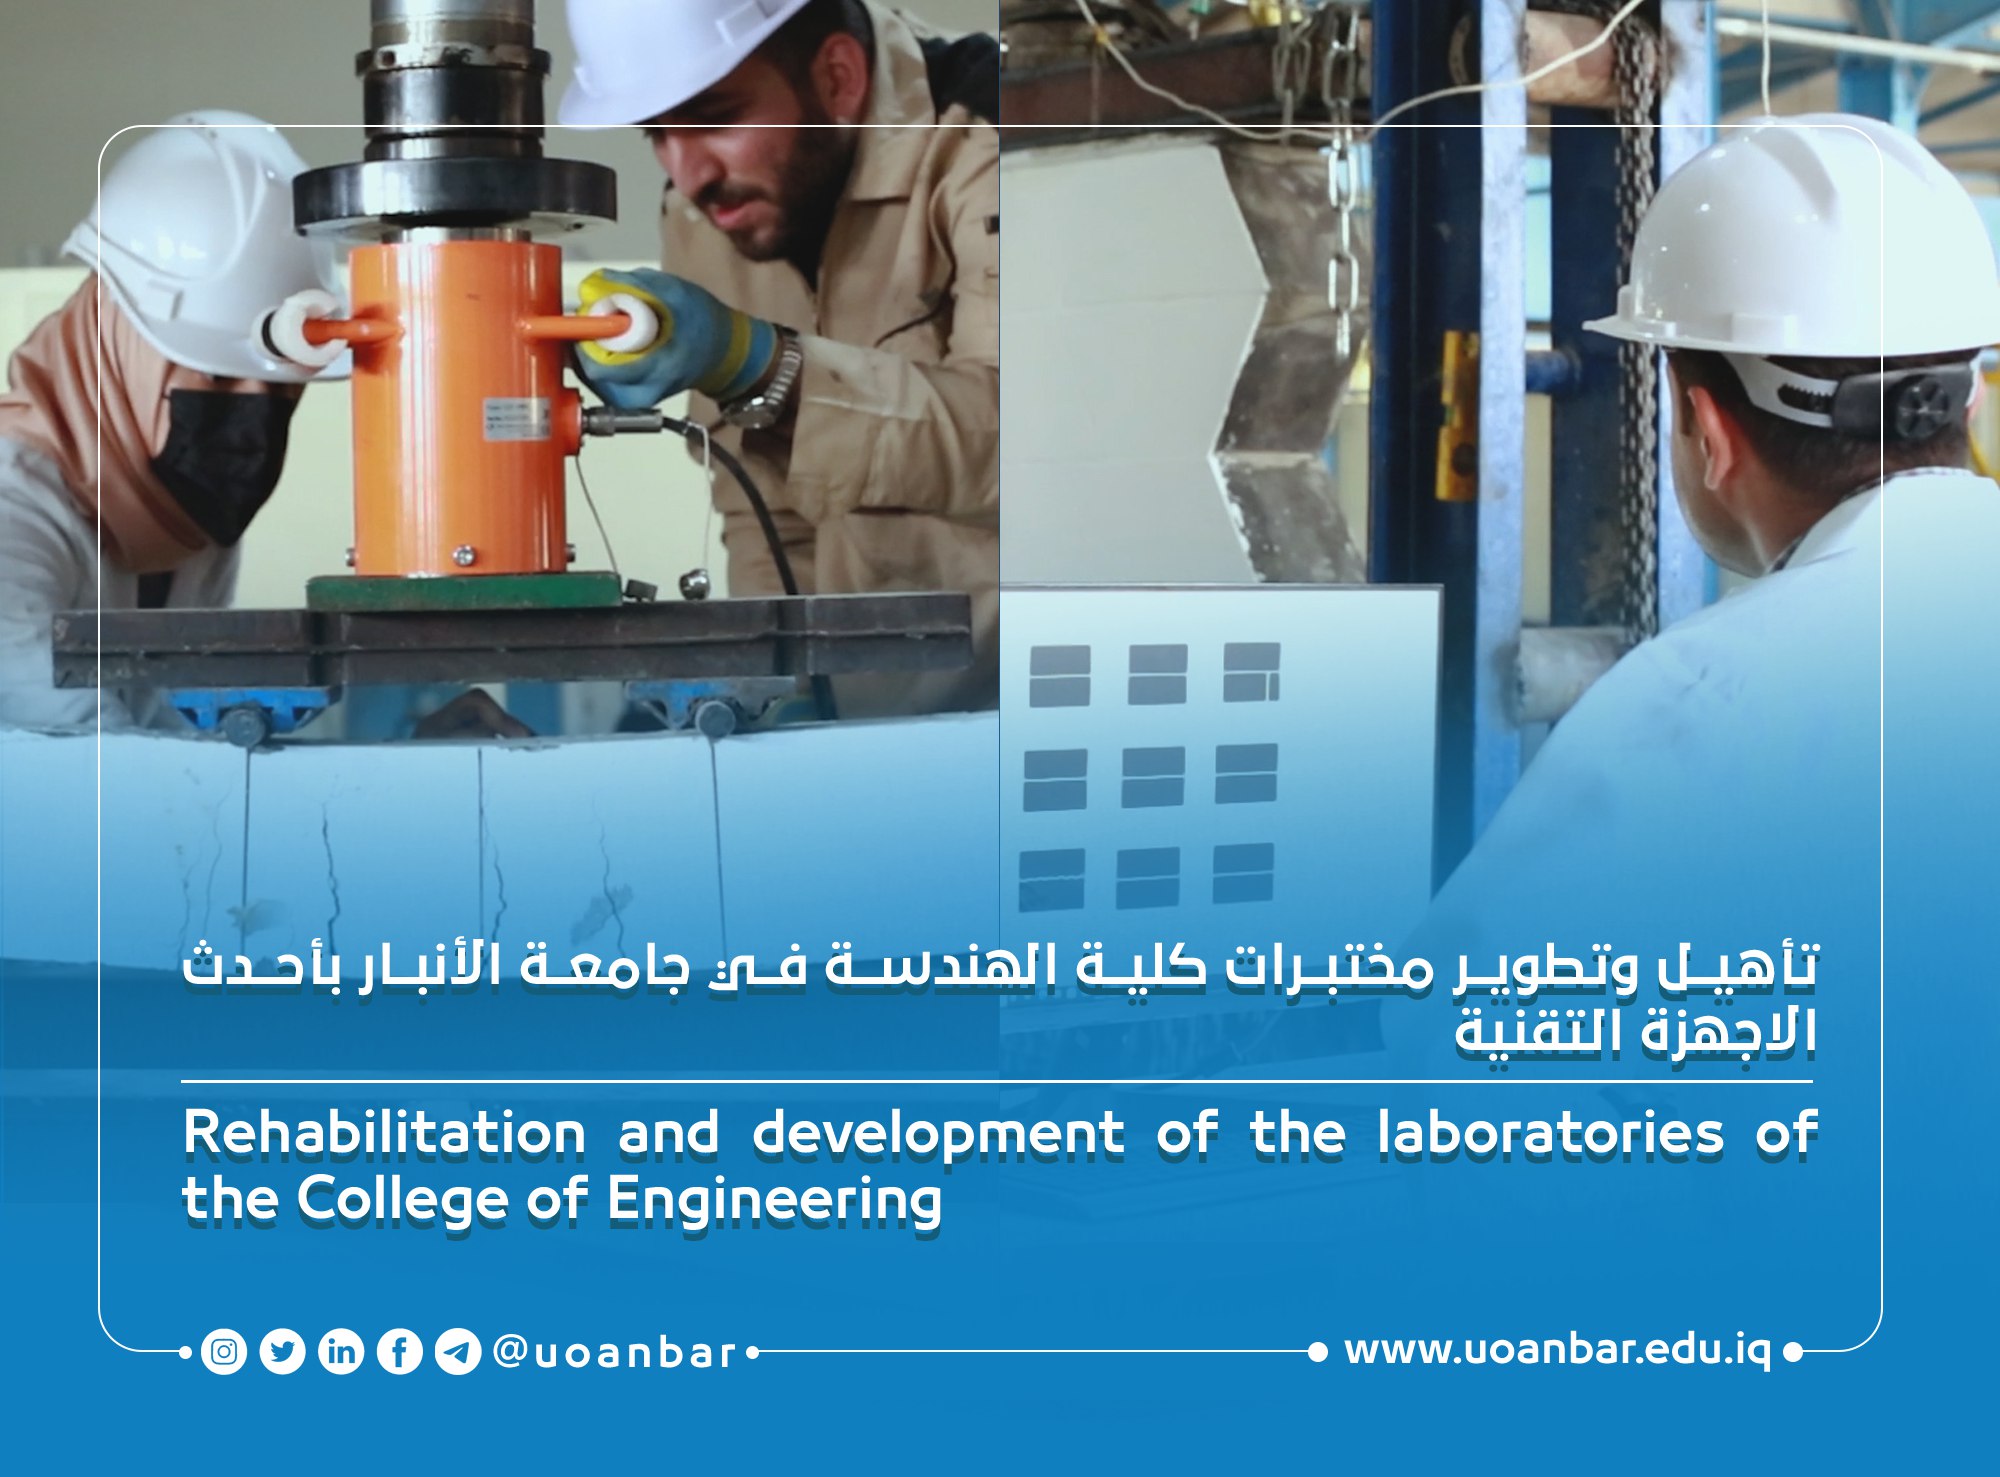 تأهيل وتطوير مختبرات كلية الهندسة في جامعة الأنبار بأحدث الاجهزة التقنية